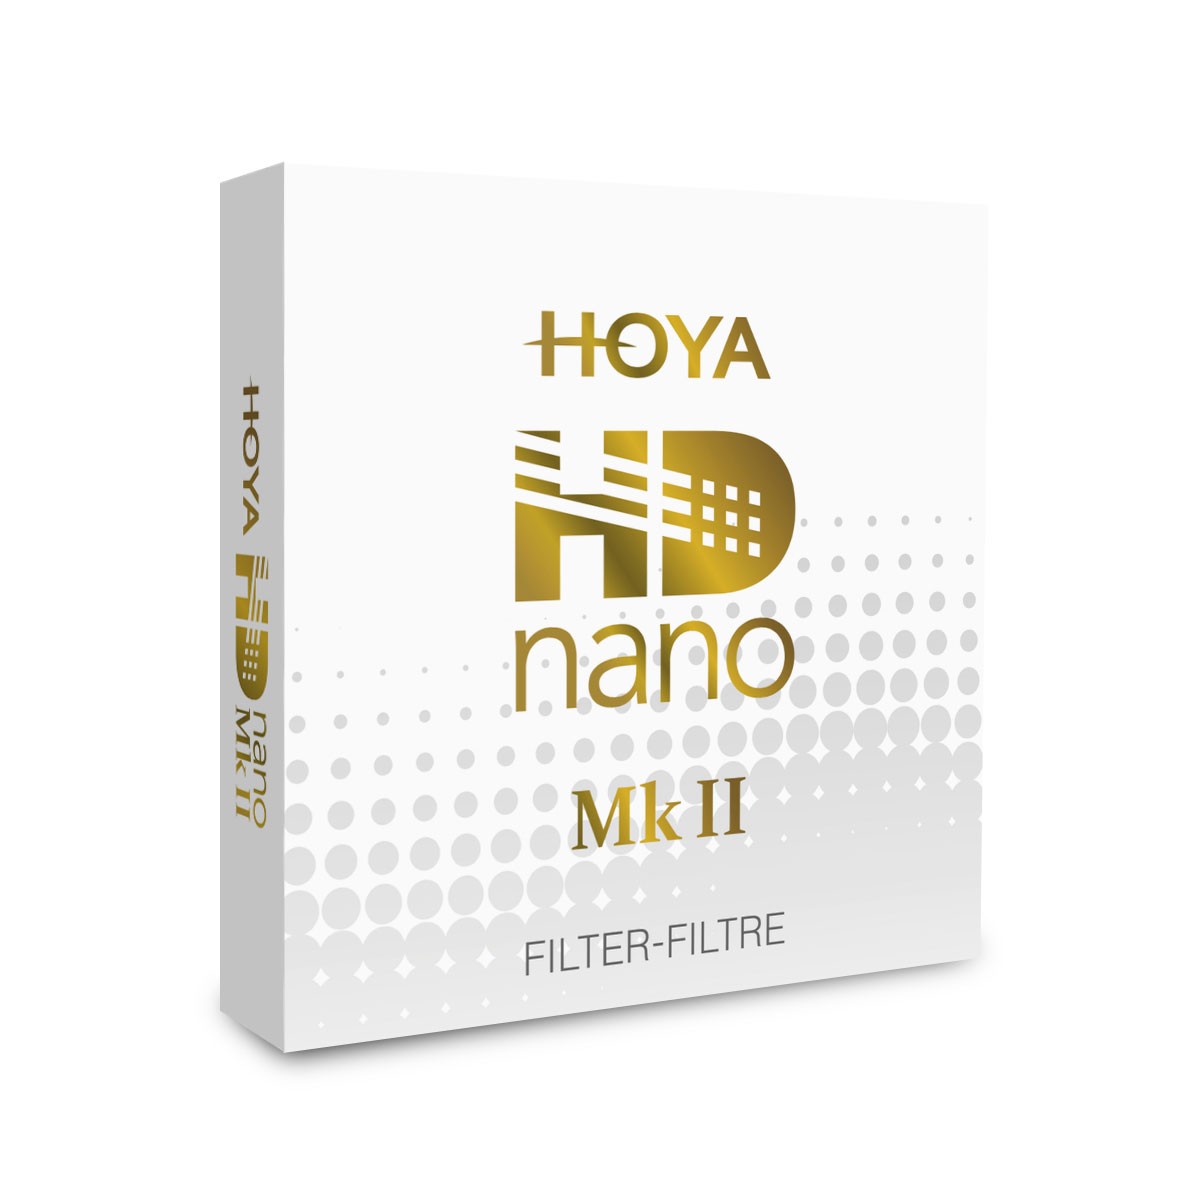 HOYA | HD nano Mk II UV